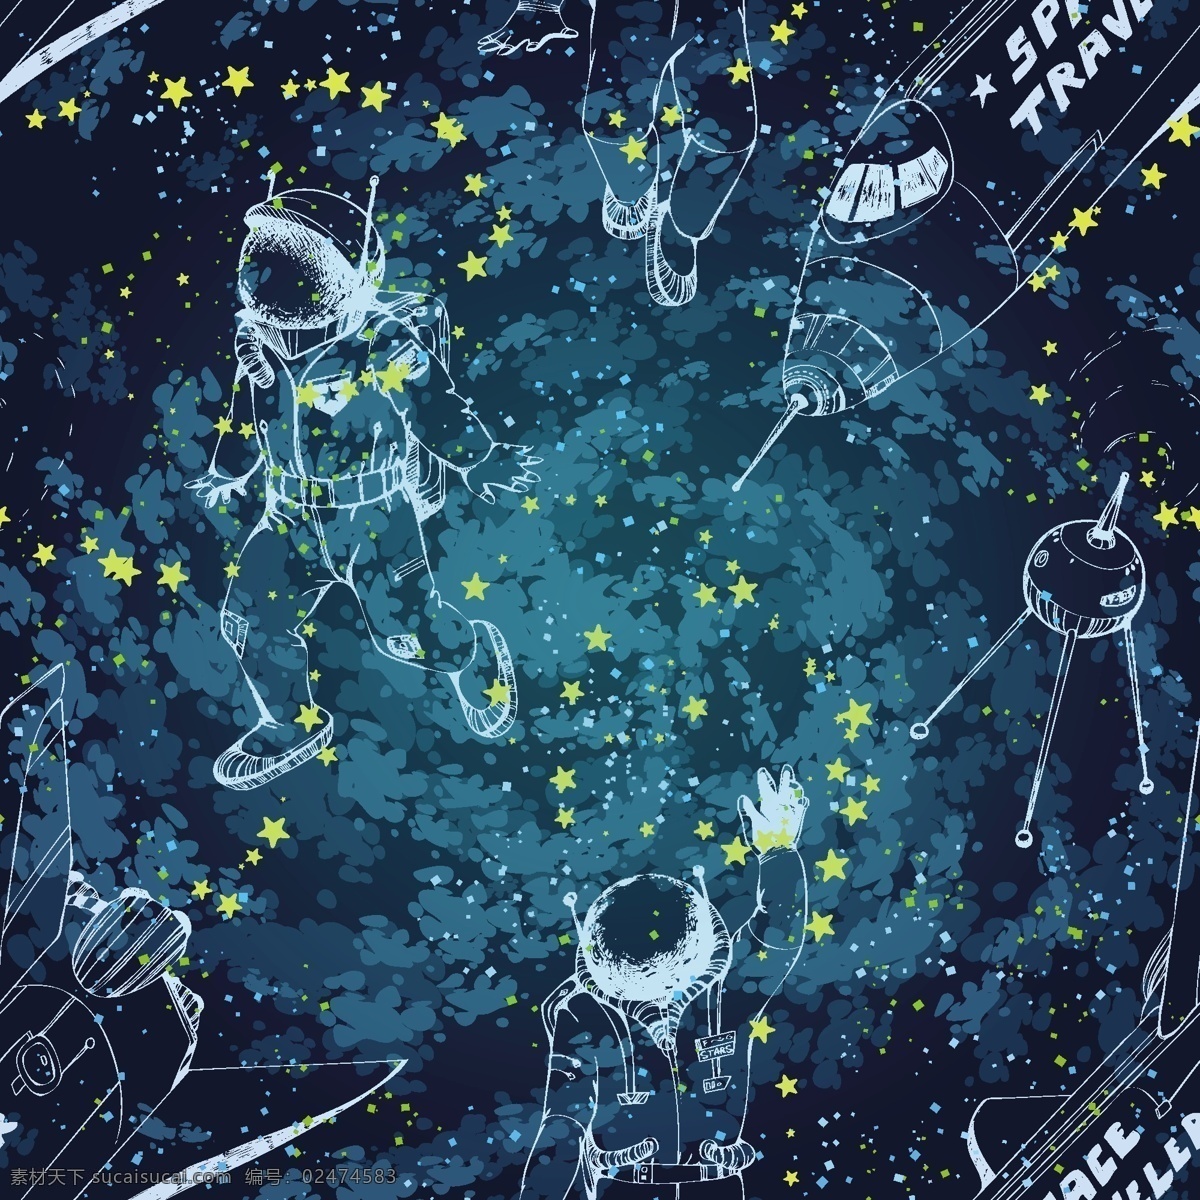 水彩 银河 星光 宇航员 矢量 背景 蓝色 星空 星星 铅笔画 粉笔画 手绘 创意 涂鸦